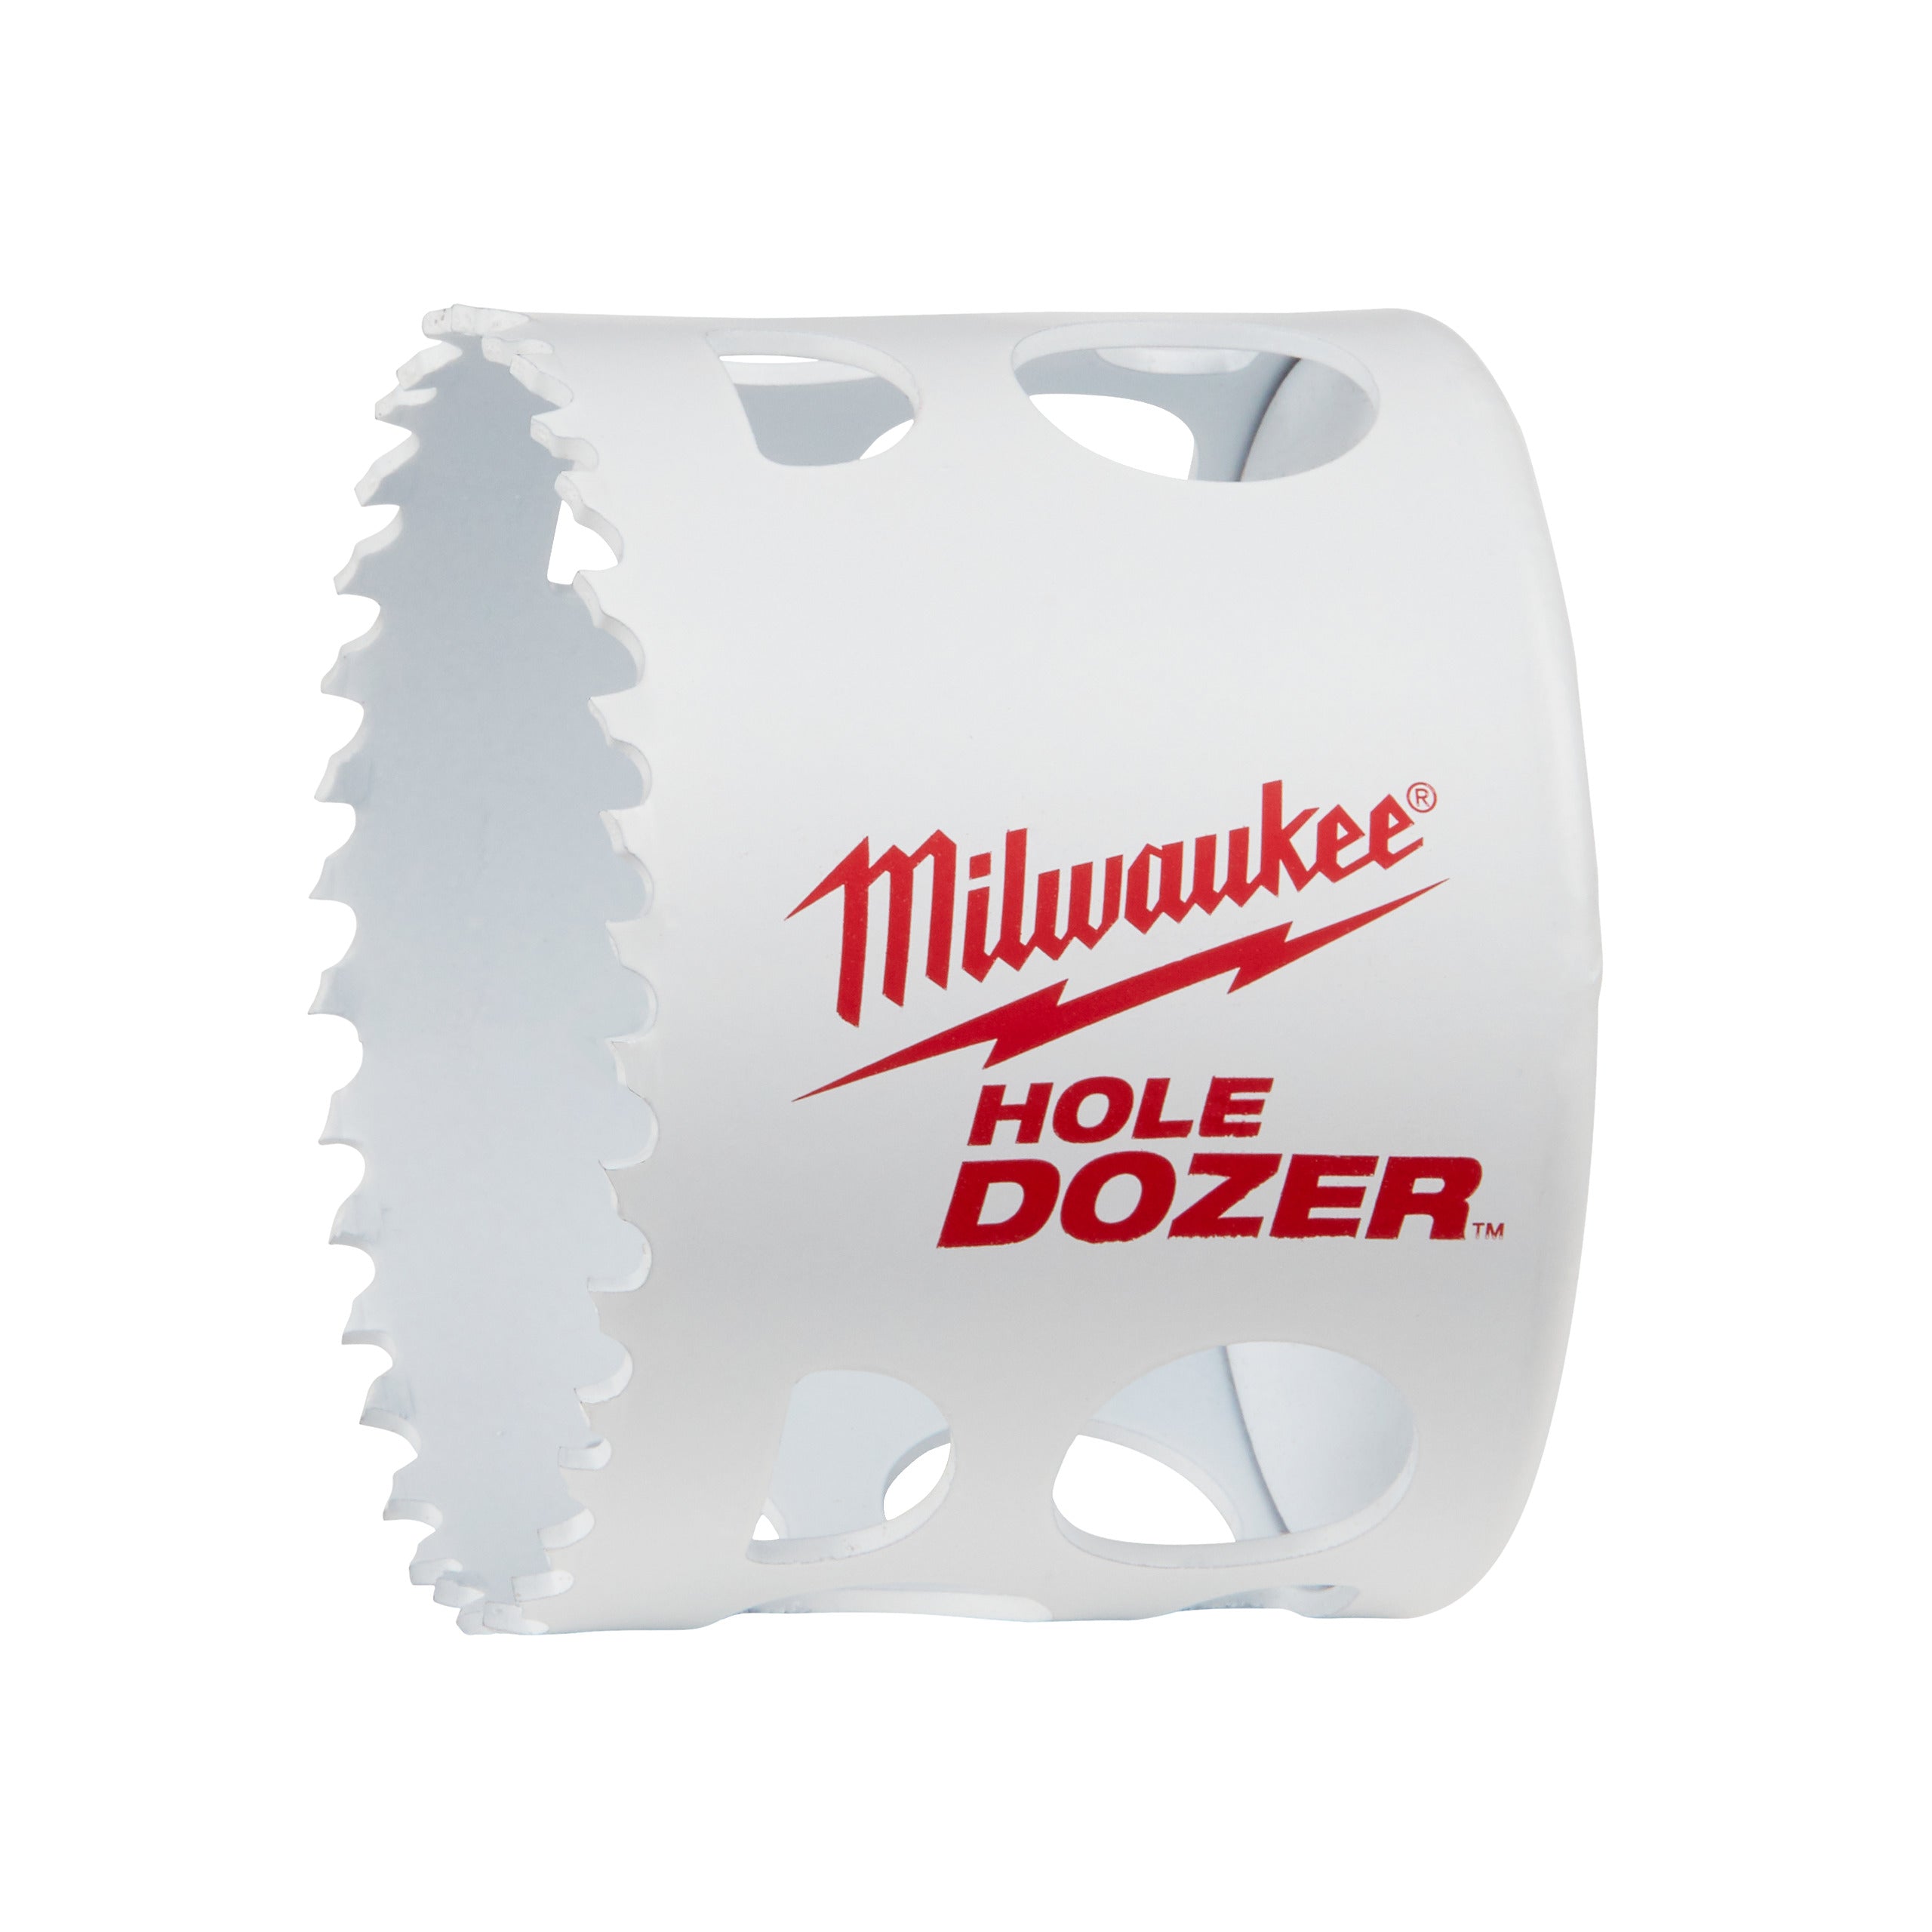 Carotă Milwaukee HOLE DOZER™ bi-metal Ø64 mm 49560147